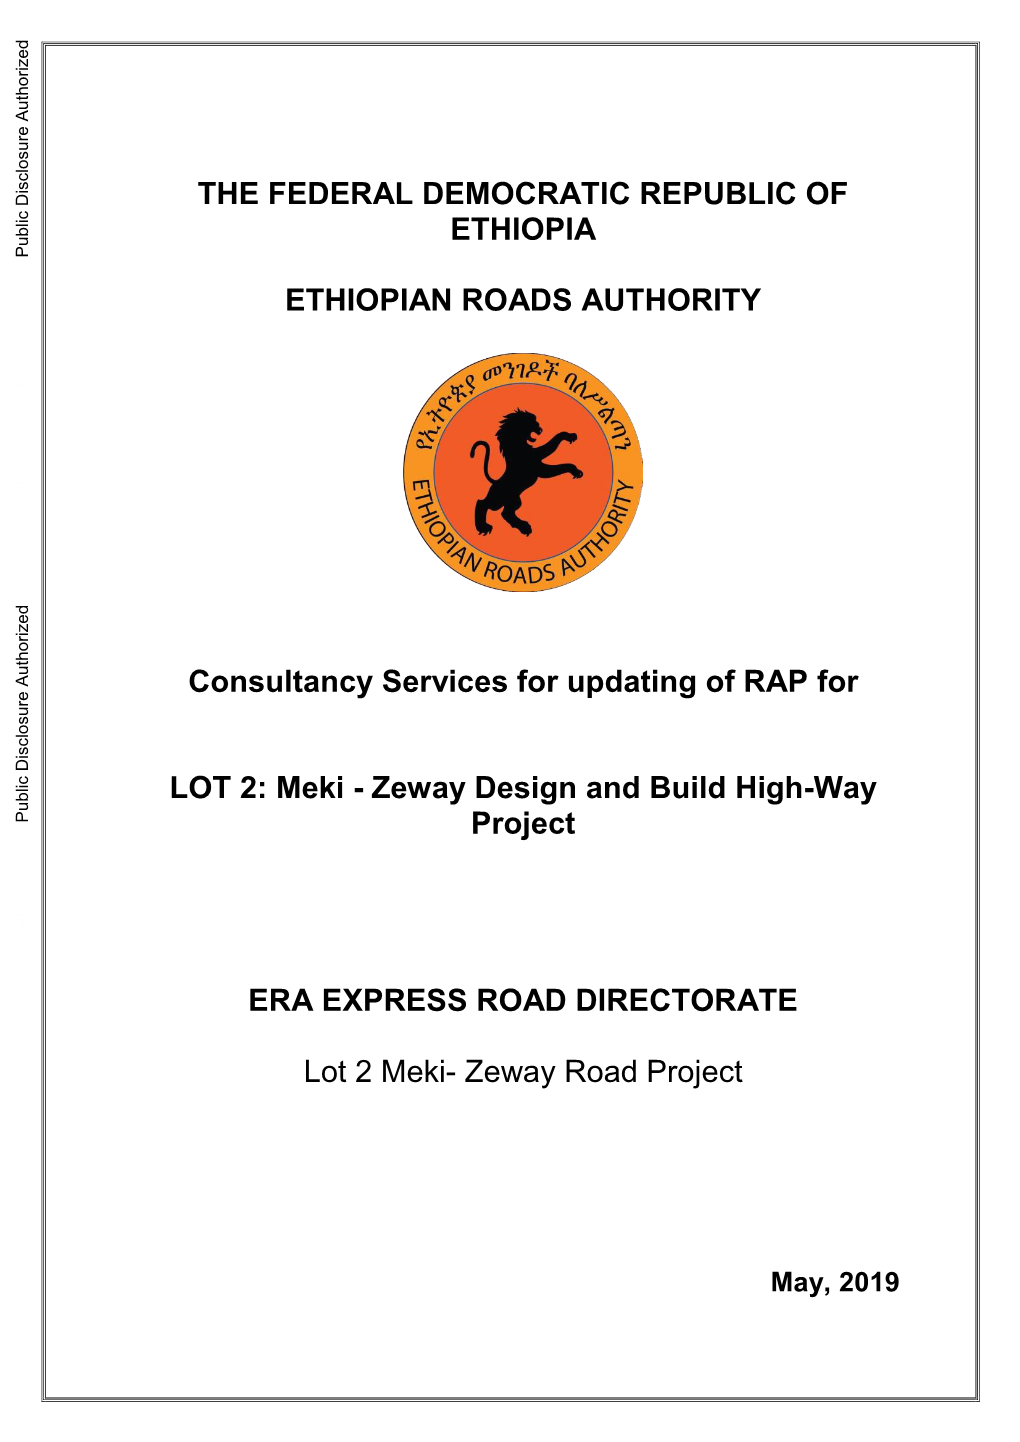 THE FEDERAL DEMOCRATIC REPUBLIC of ETHIOPIA Public Disclosure Authorized ETHIOPIAN ROADS AUTHORITY